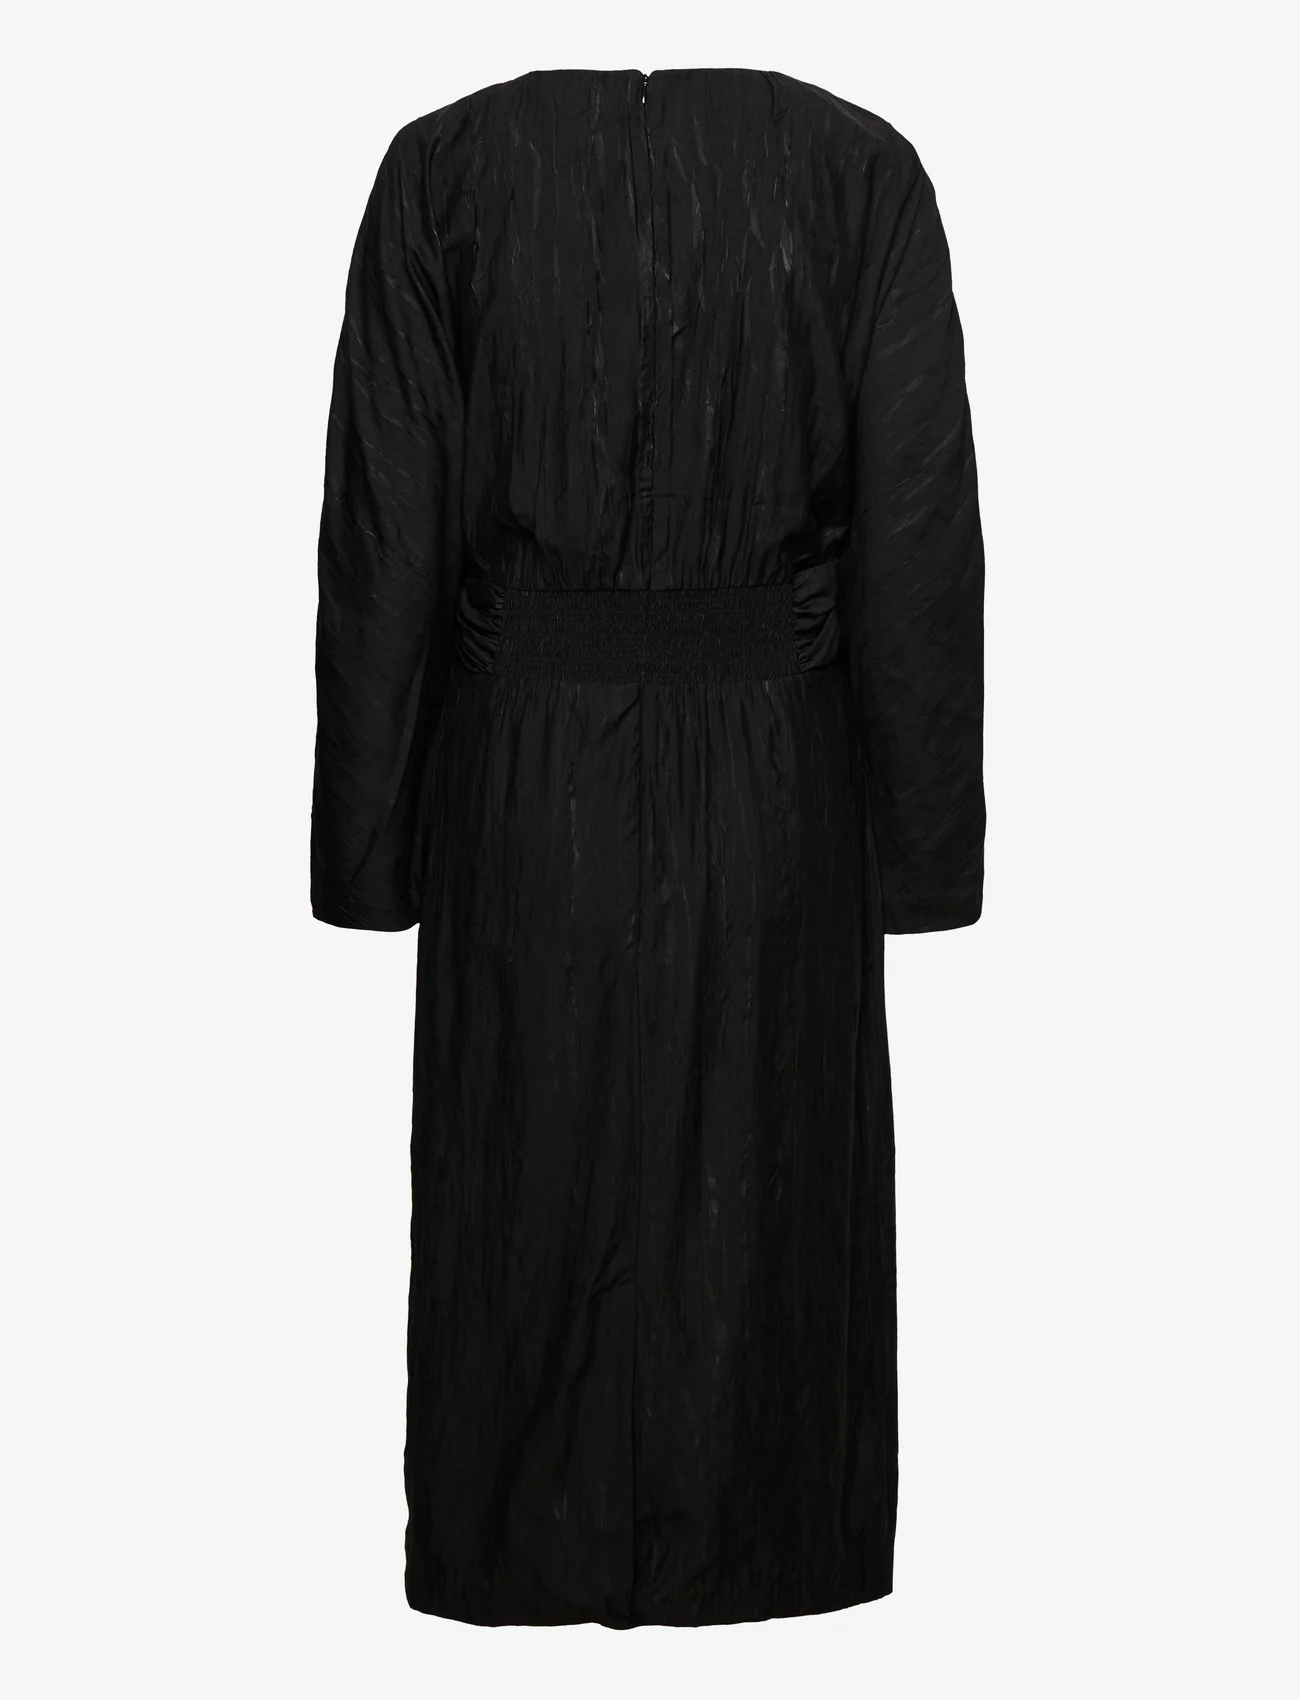 Stylein - MILANA DRESS - midikleidid - black - 1